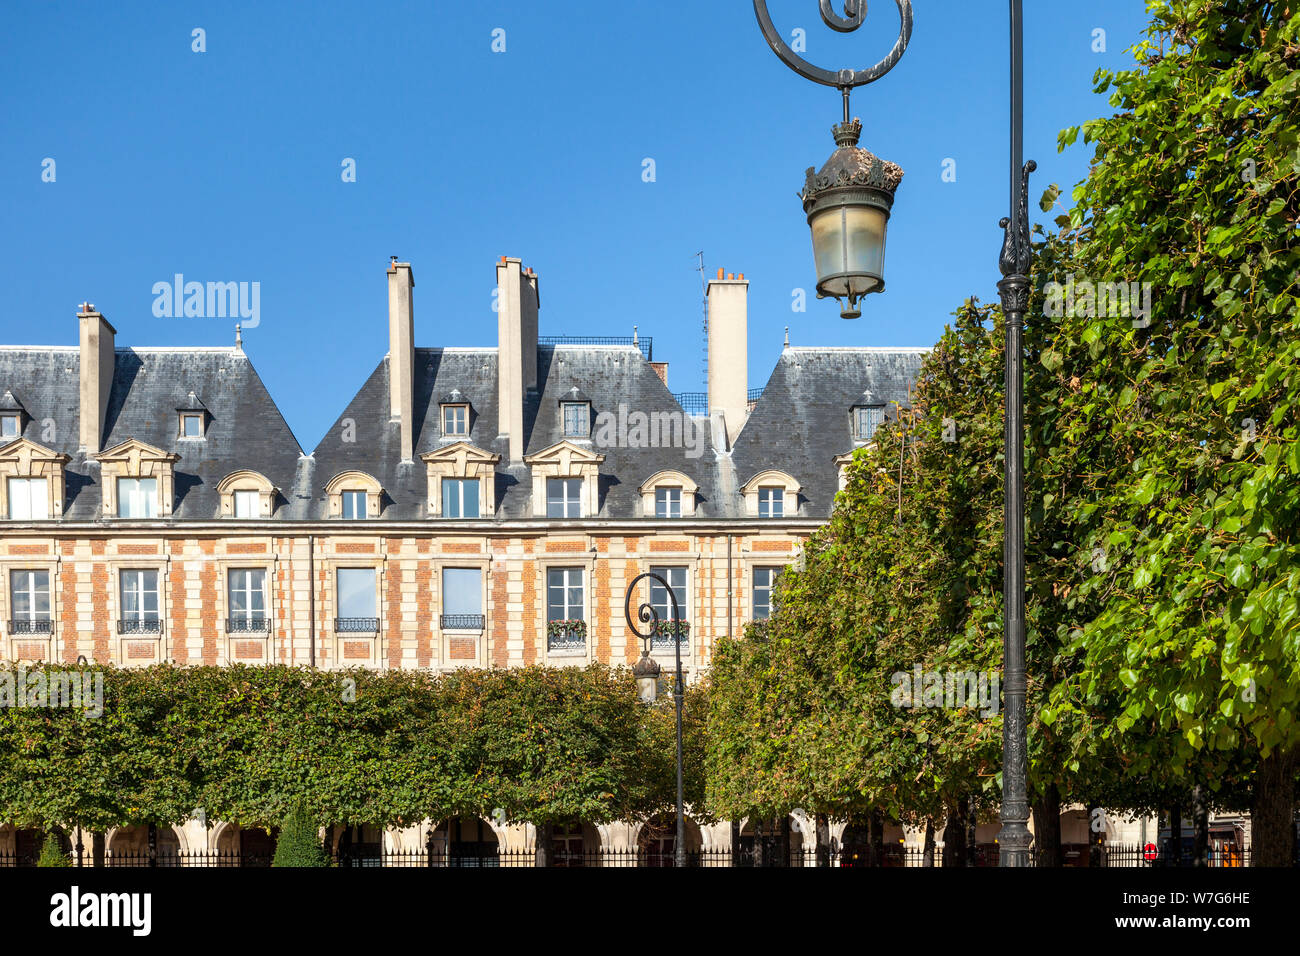 Alberi ben curati e architettura in Place des Vosges - la più antica piazza di Parigi e dell' Ile-de-France, Francia Foto Stock